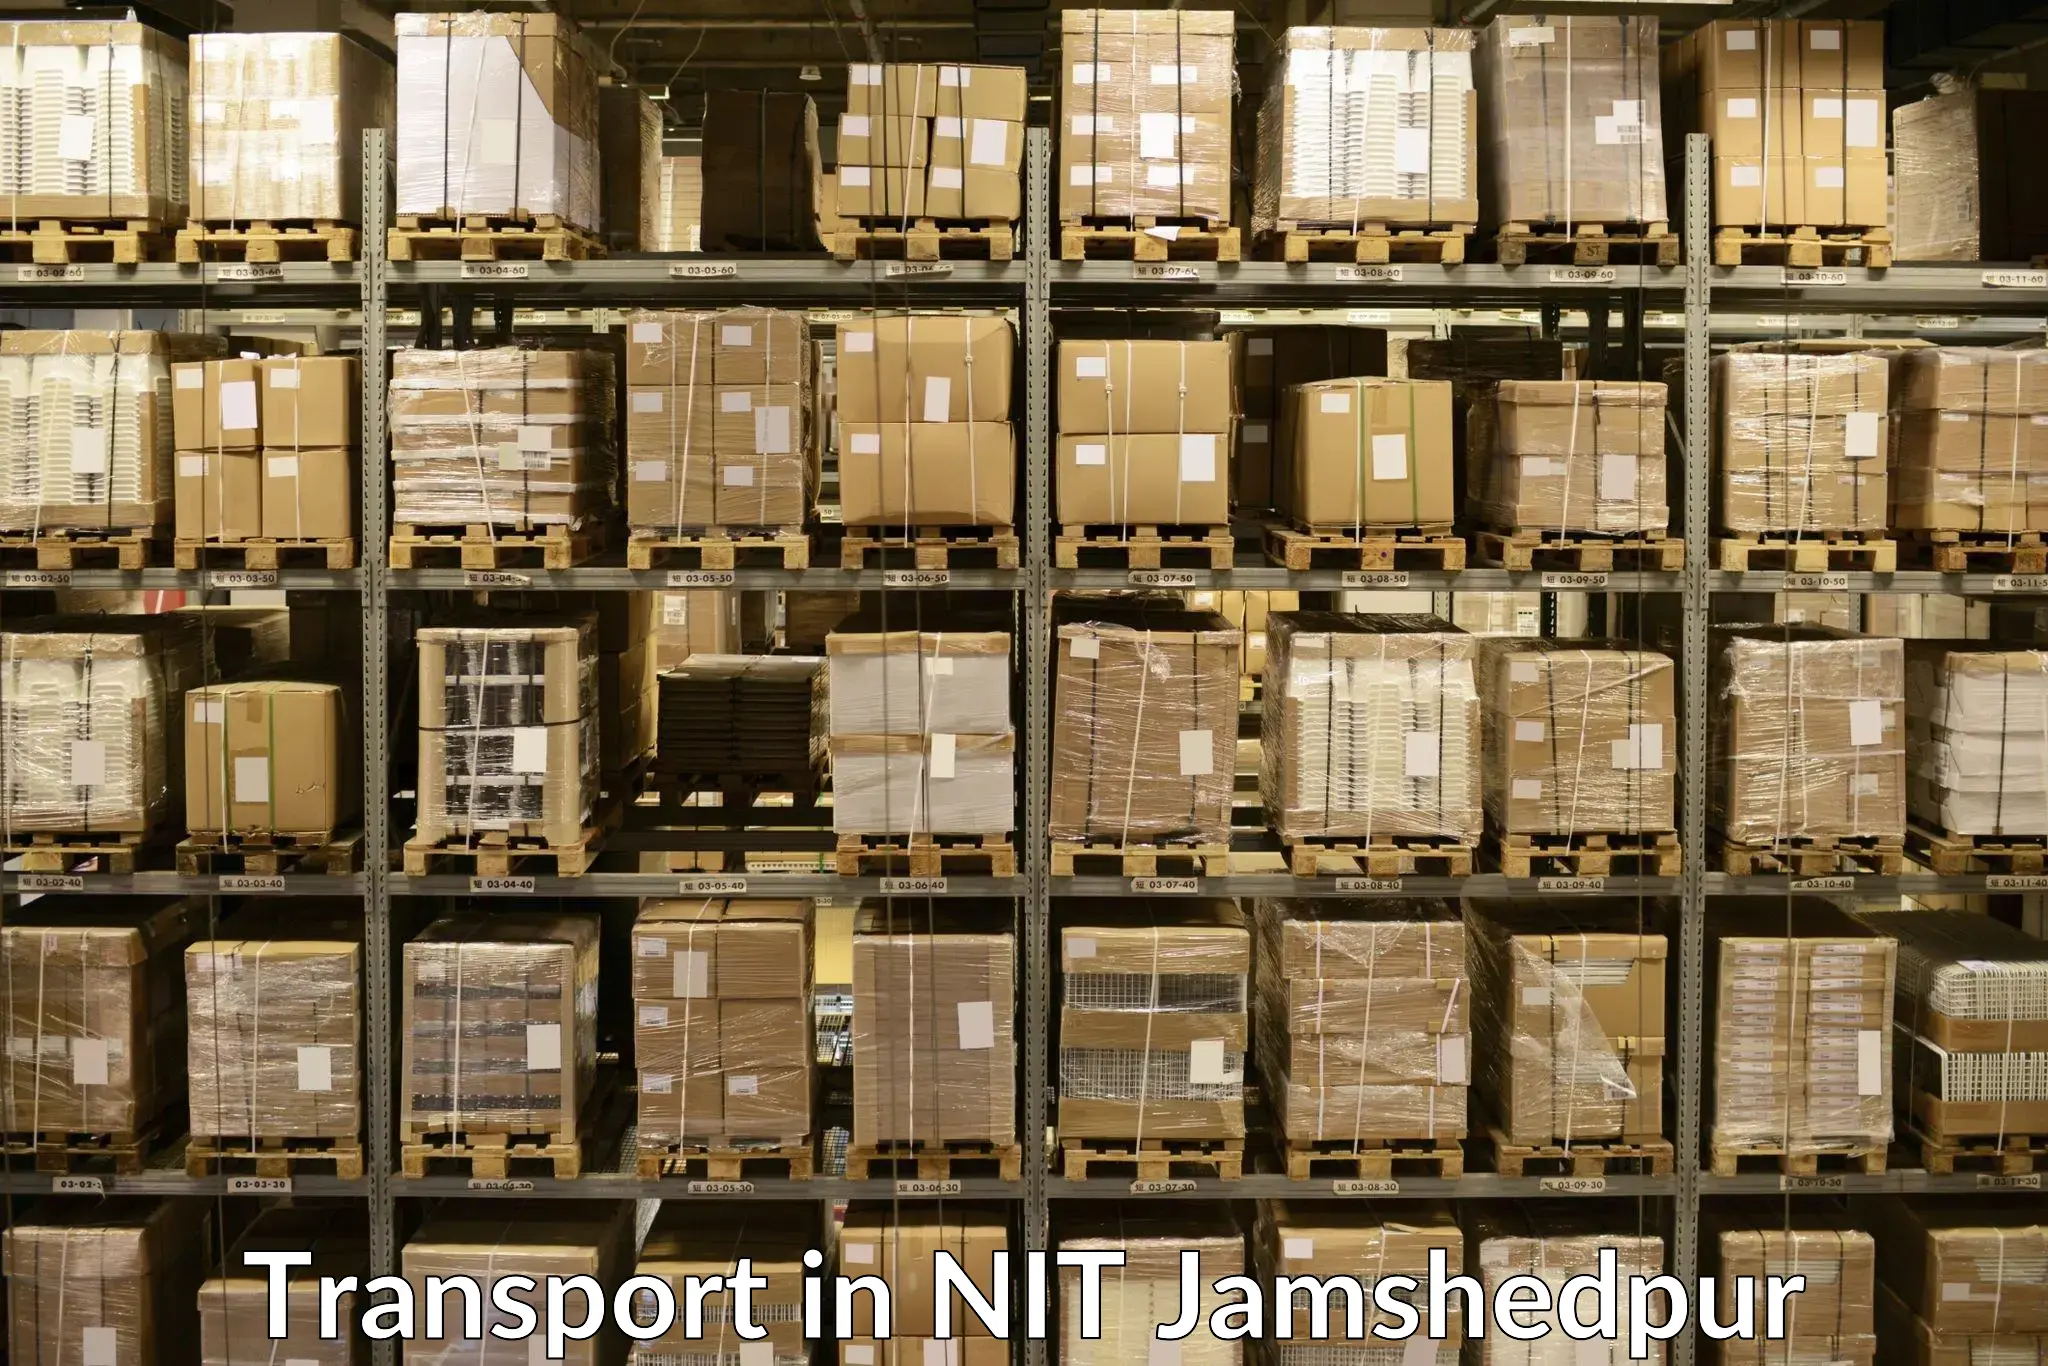 Online transport booking in NIT Jamshedpur